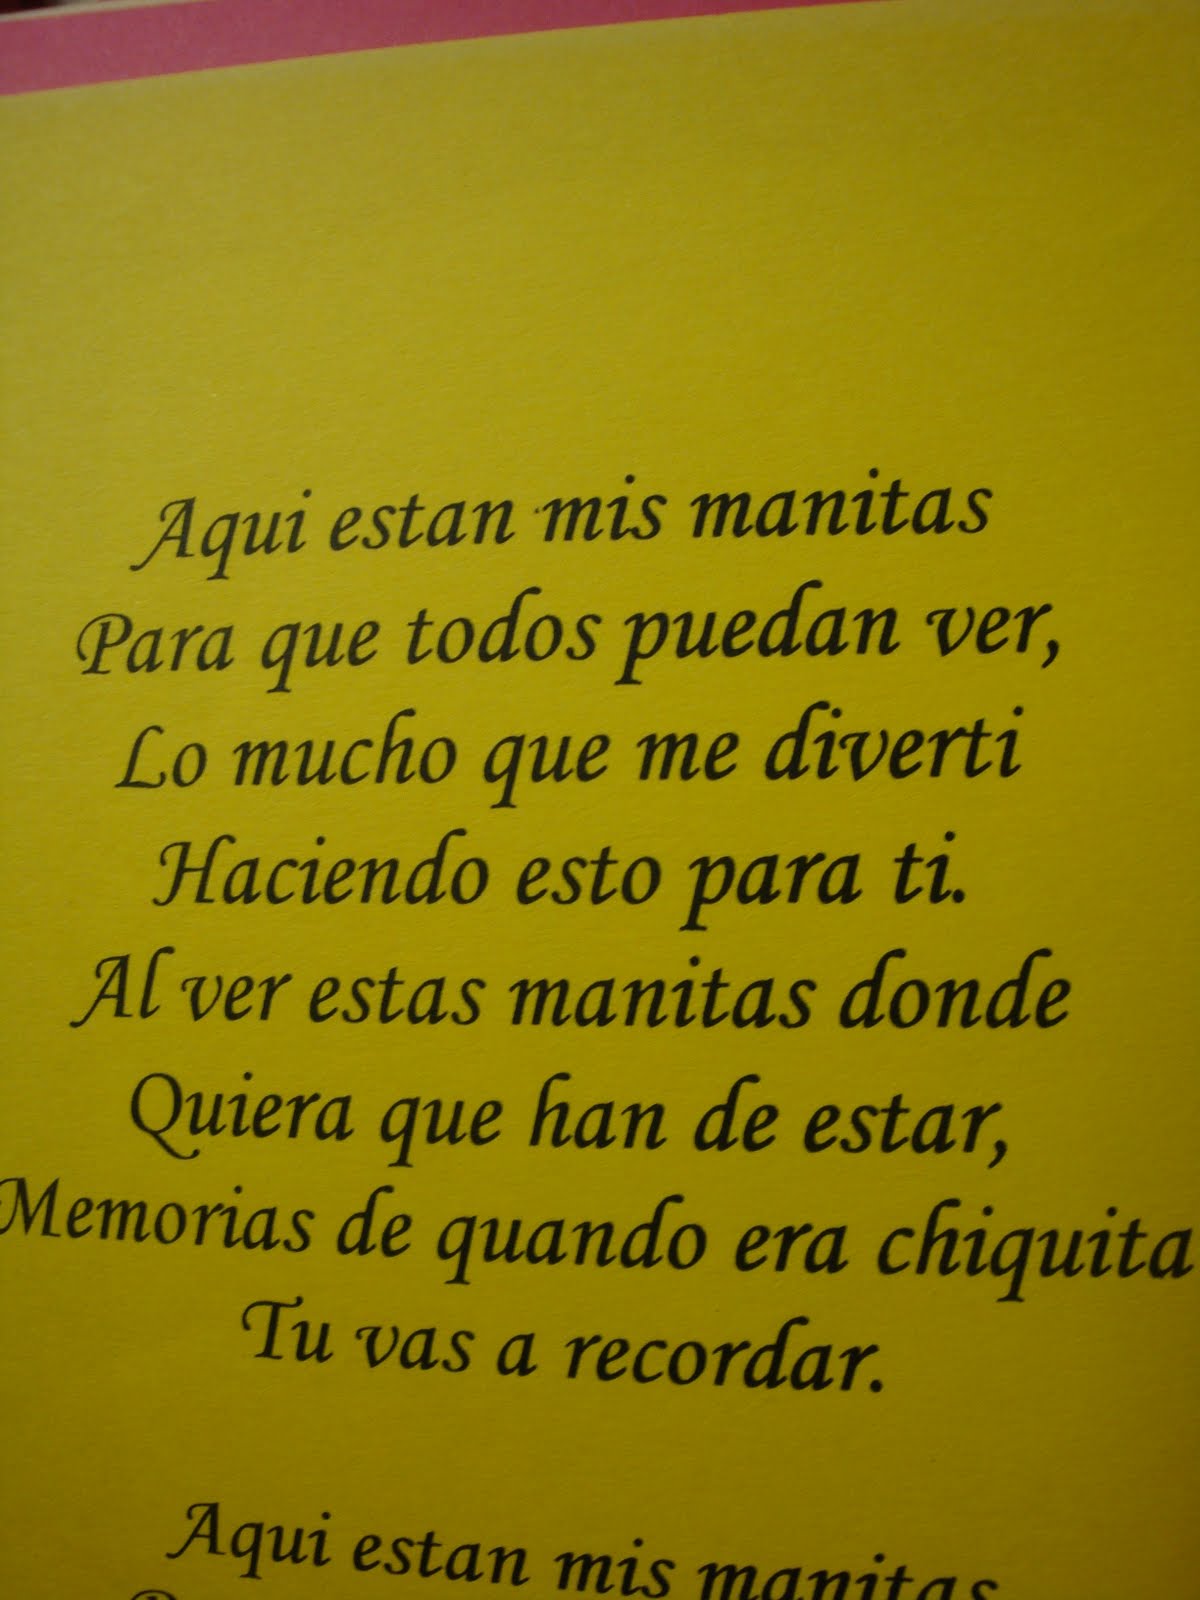 Romantic spanish poems famous The Best